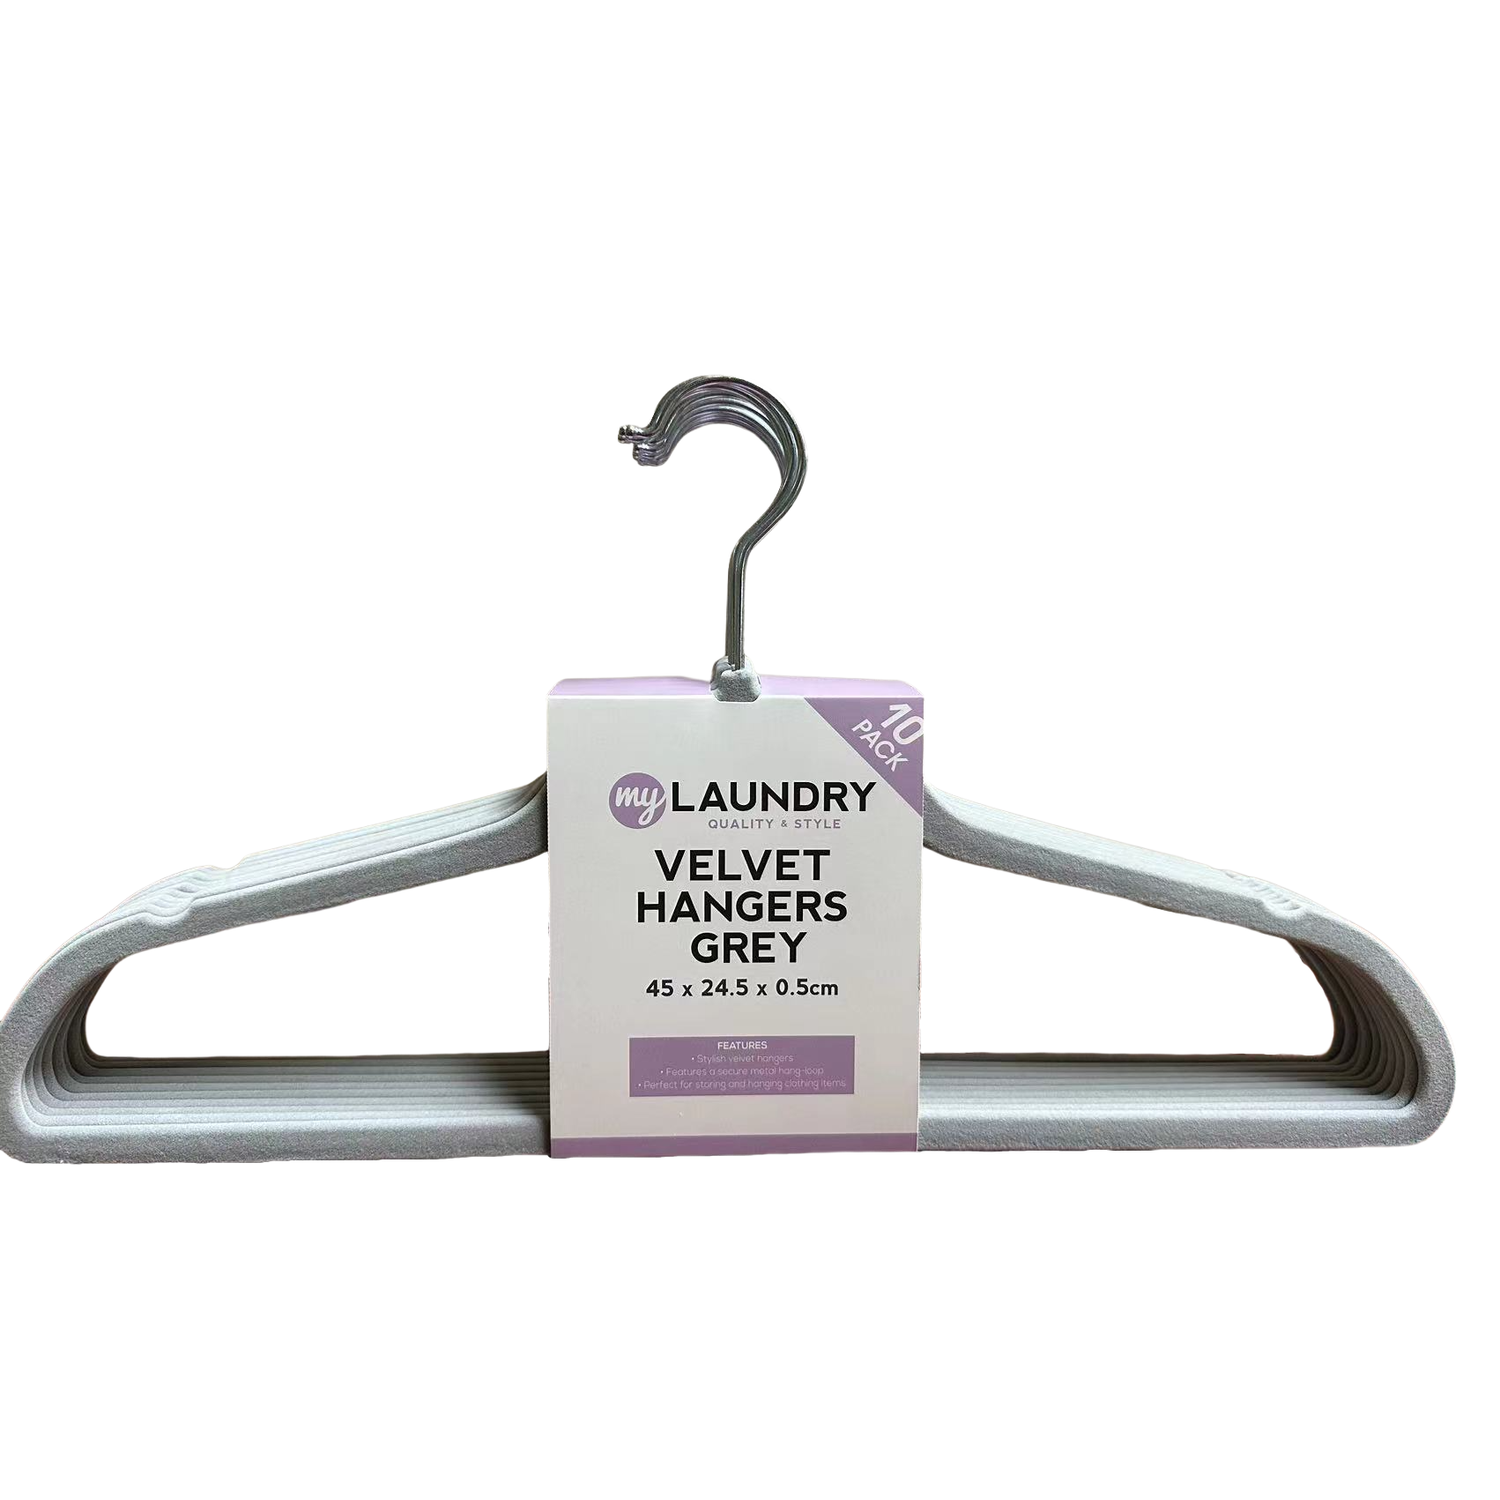 My Laundry Grey Velvet Hanger 10 Pack Image 1